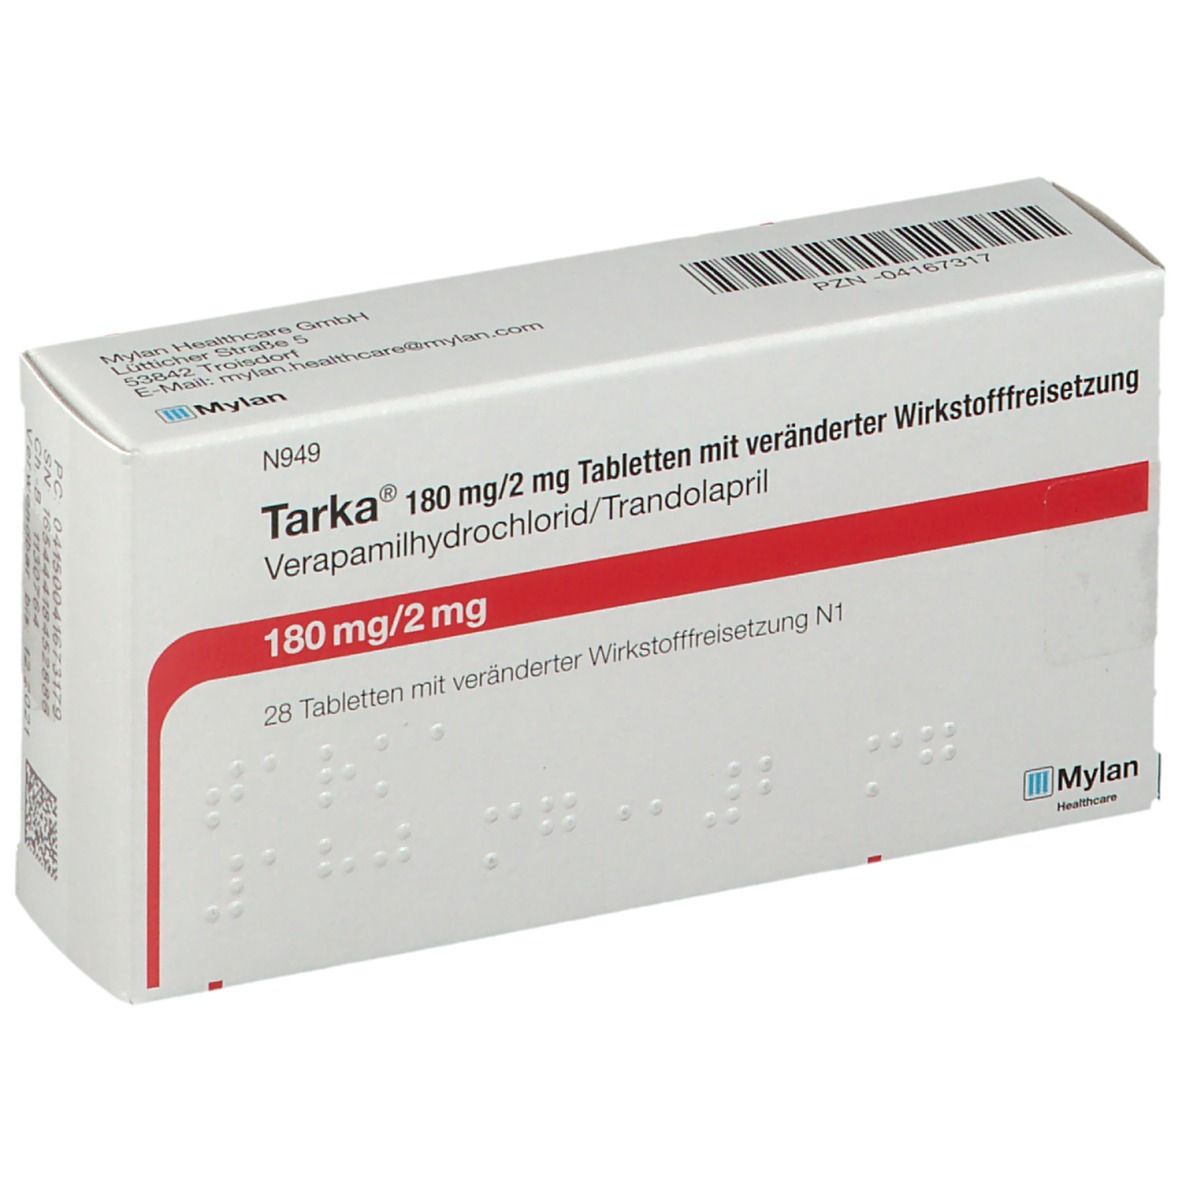 Tarka® 180 mg/2 mg